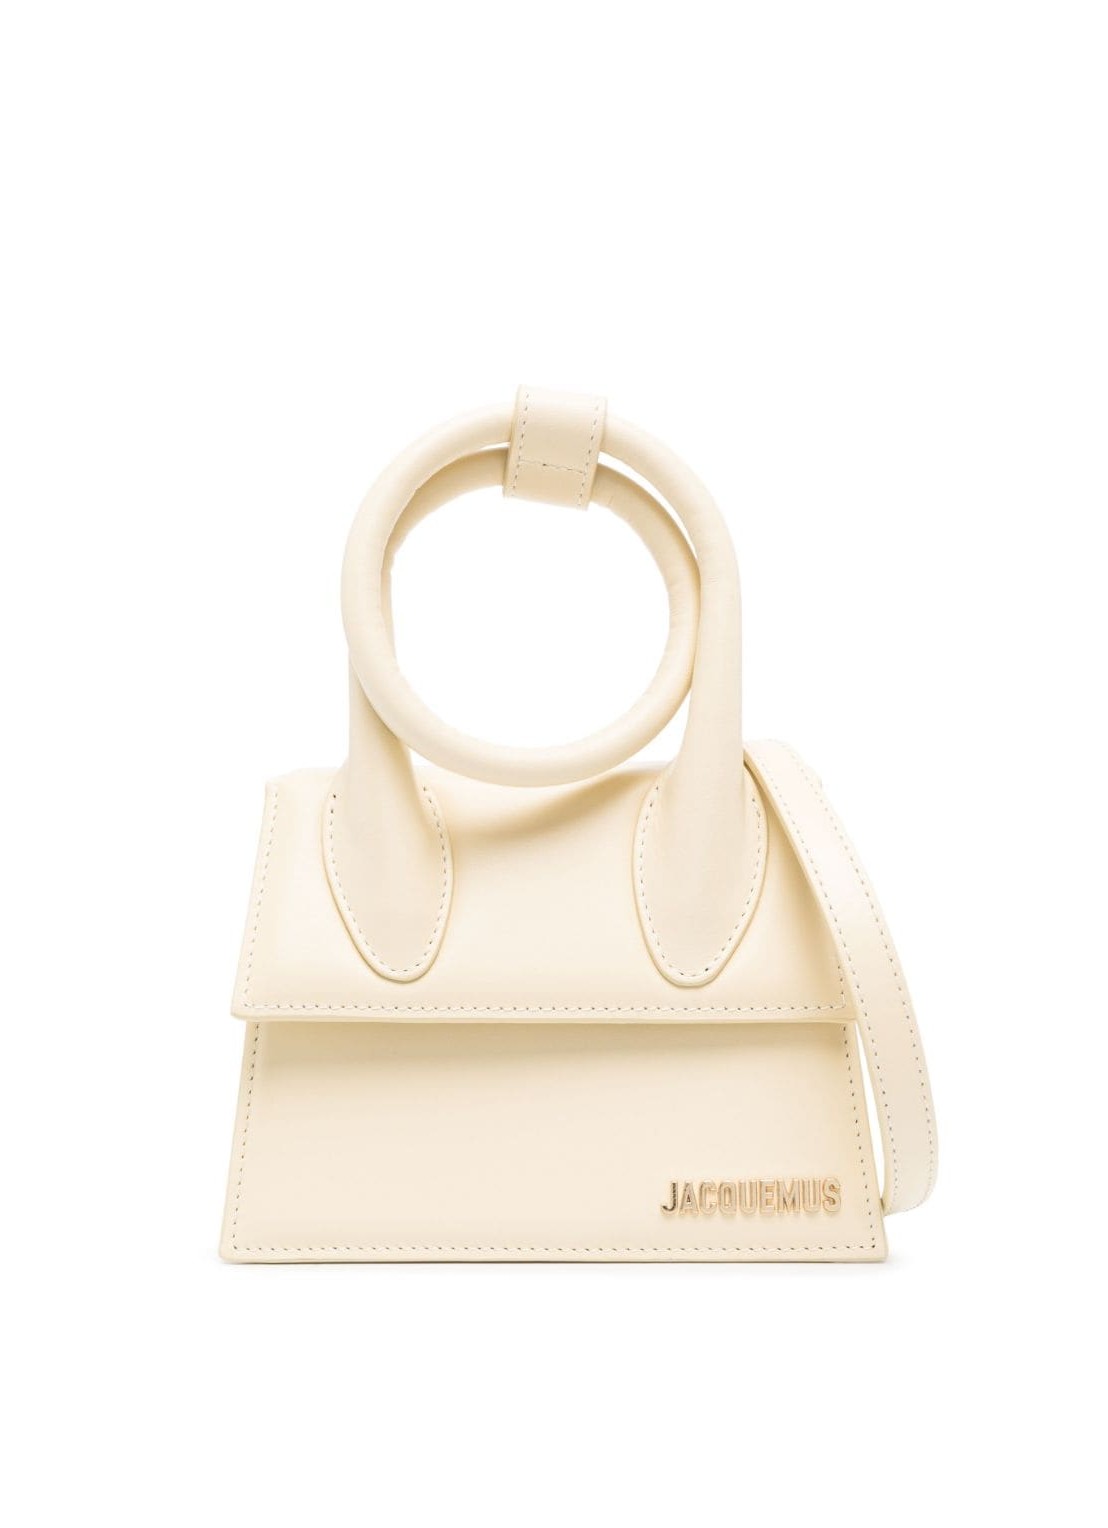 Handbag jacquemus handbag woman le chiquito noeud 22e213ba0053060 120 talla blanco
 